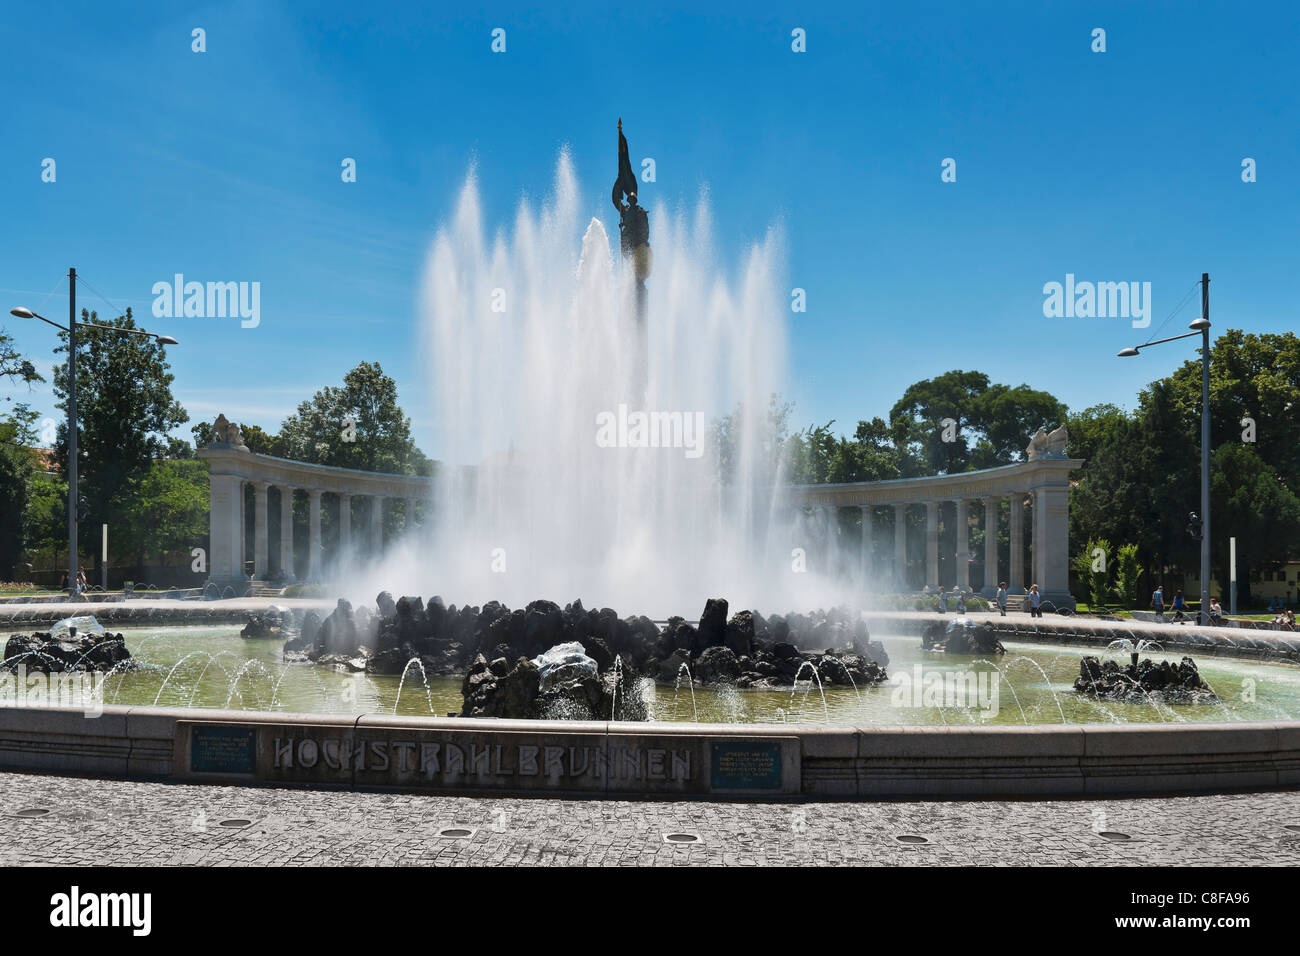 La Hochstrahlbrunnen est une fontaine géante à Vienne, Autriche, Europe Banque D'Images